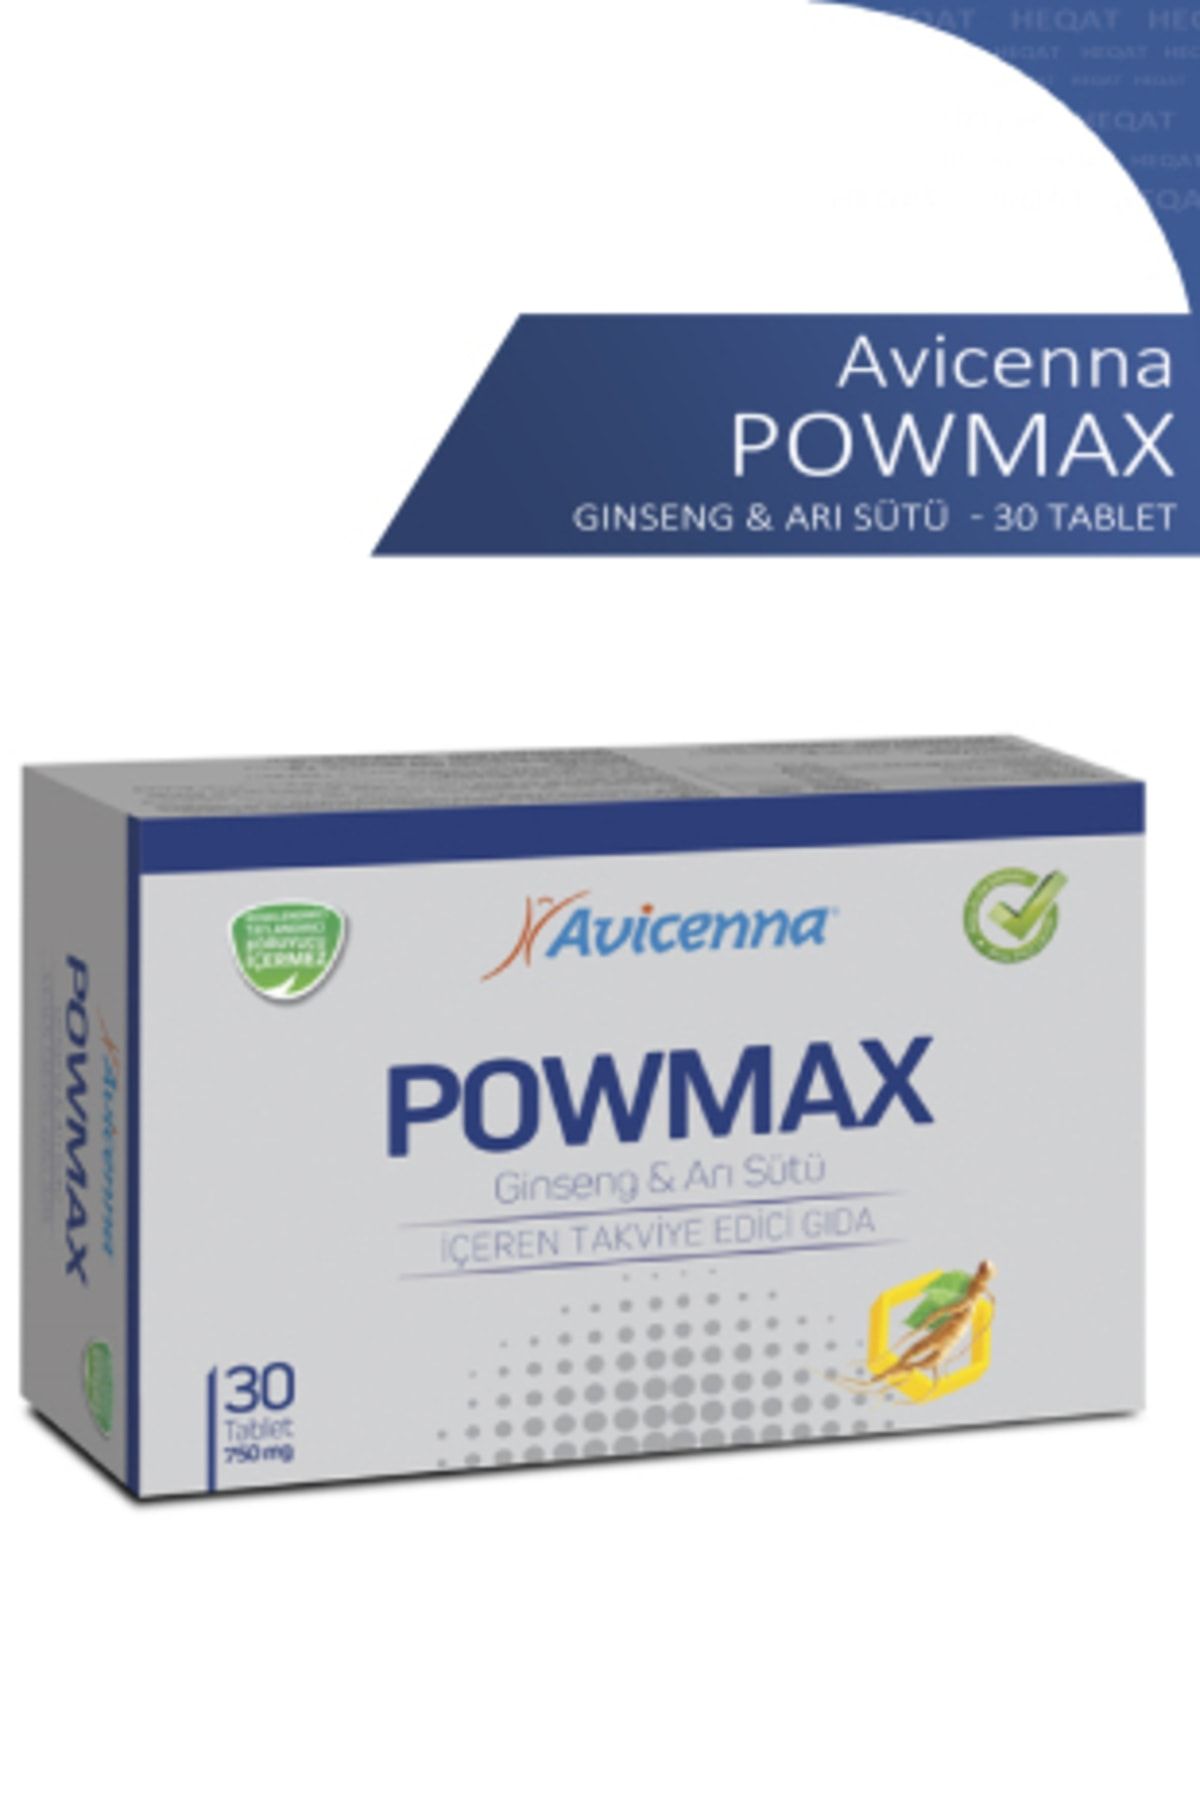 Avicenna Powmax - Ginseng & Arı Sütü İçeren Takviye Edici Gıda - 30 Tablet - 8690088005435